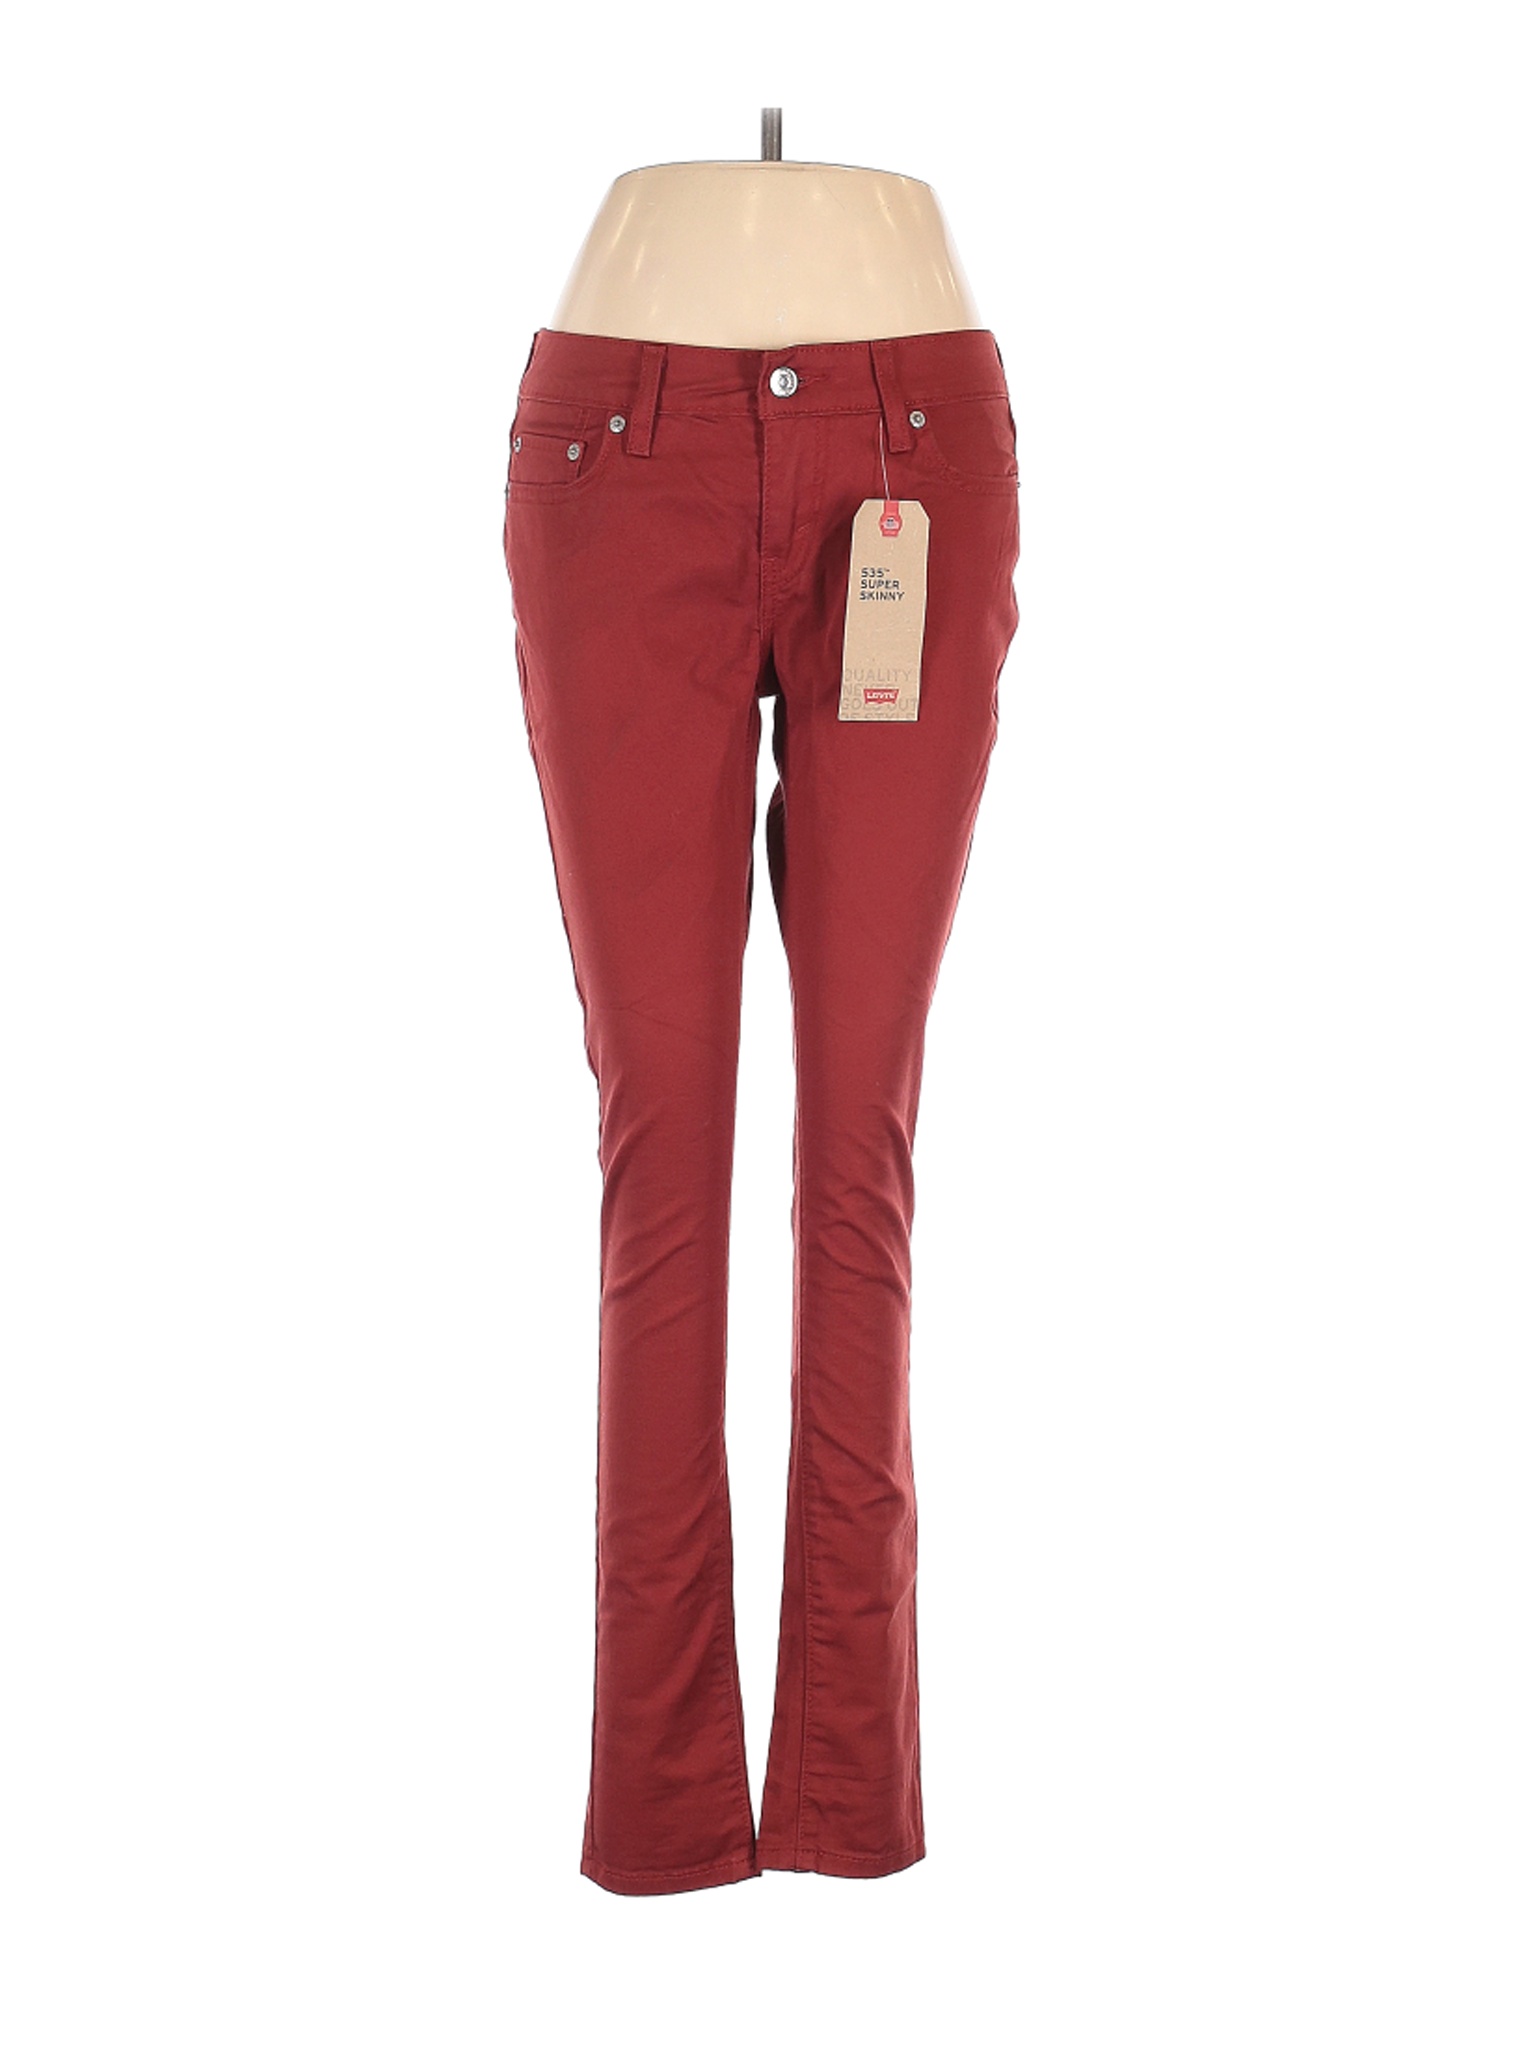 NWT Levi's Women Red Jeans 29W | eBay